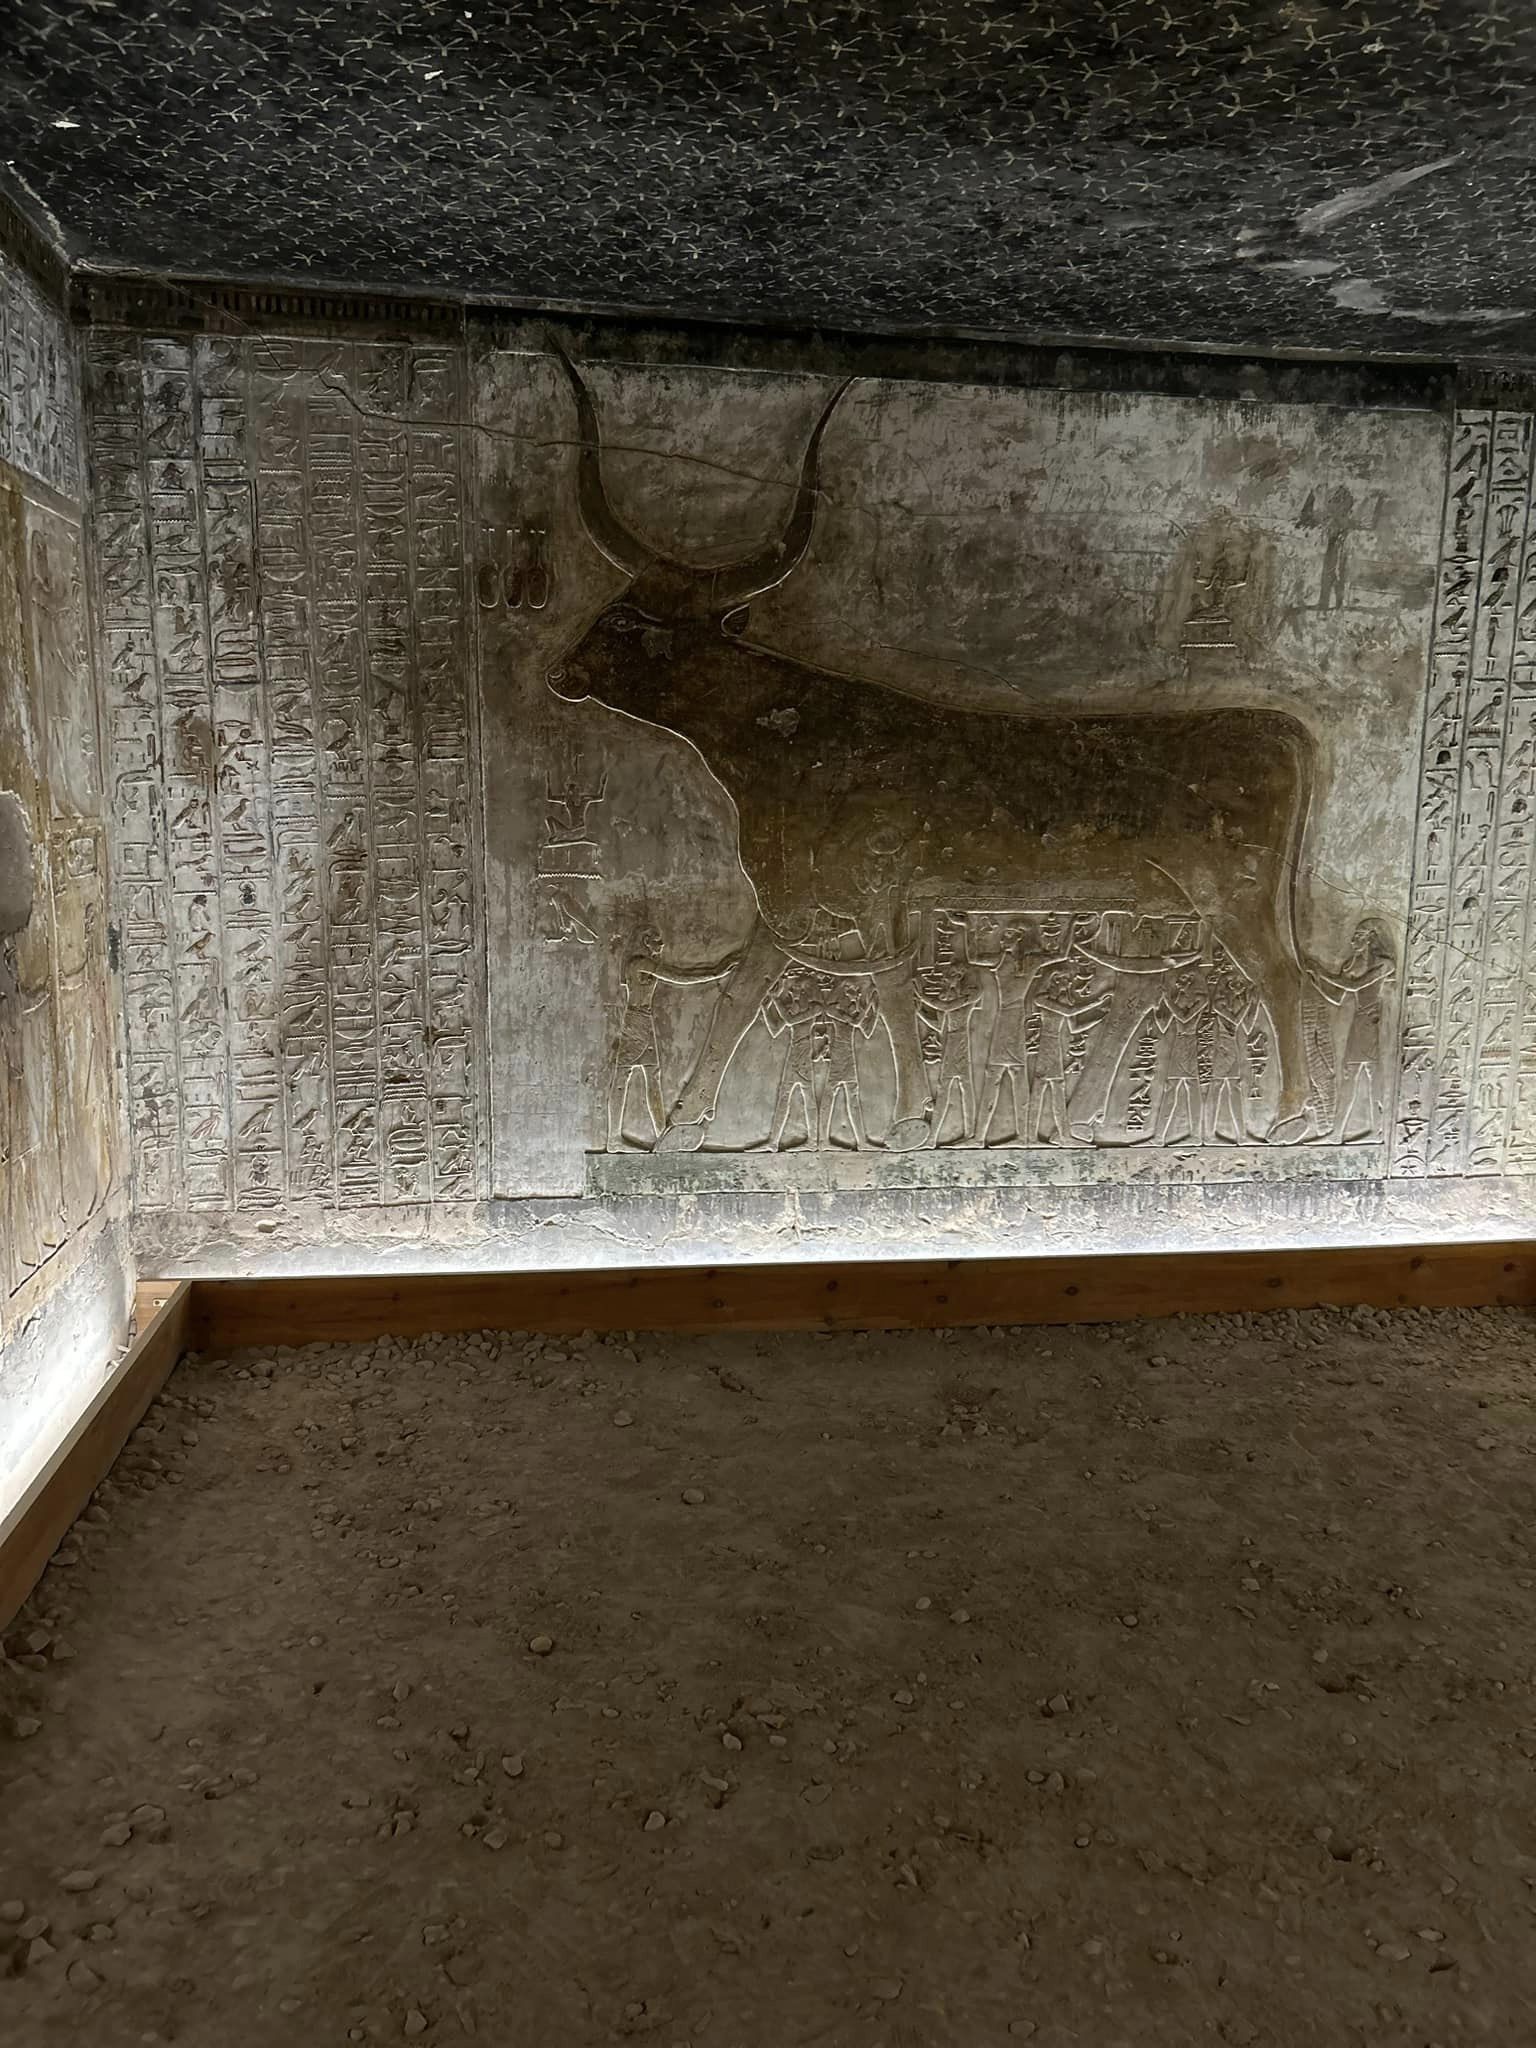 اللوحات فى غرف مقبرة سيتى الأول بوادى الملوك